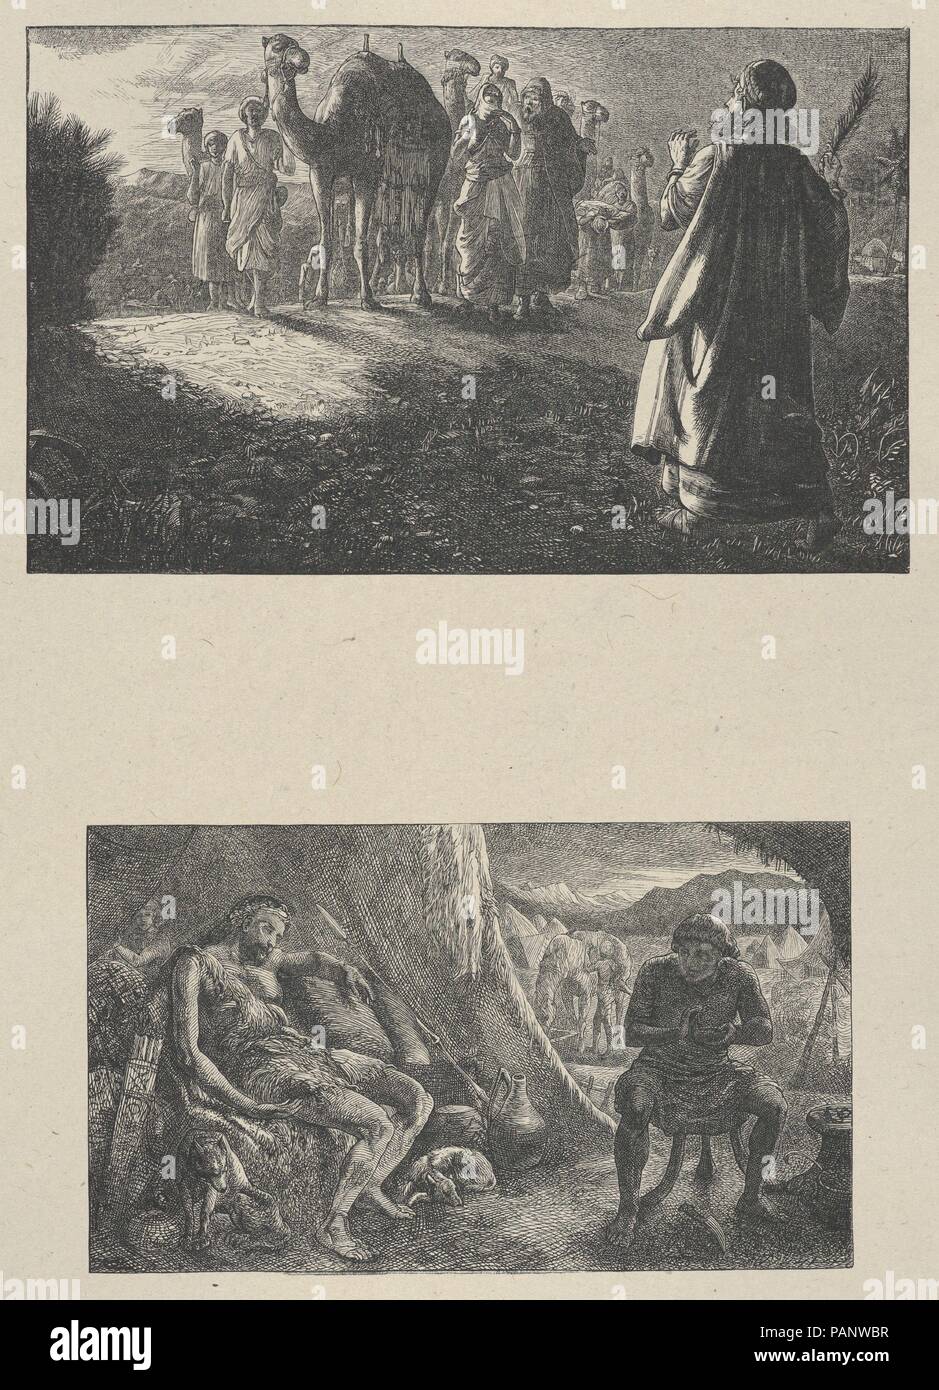 Rencontre Rebekah-Esau Isaac vendre son droit d'aînesse (Dalziels' Bible Galerie). Artiste : Thomas Dalziel (British, Wooler, Northumberland 1823-1906 Herne Bay, Kent). Dimensions : Image : 4 × 6 5/16 13/16 in. (10,9 × 17,3 cm) Image : 3 1/2 x 5 7/8 in. (8,9 × 15 cm) Fiche technique de l'Inde : 11 1/8 x 8 1/4 in. (28,3 × 21 cm) Mont : 16 3/8 in. × 12 15/16 in. (41,6 × 32,9 cm). Graveur : Dalziel Brothers (britannique, 1839-1893) active. Imprimante : Camden Press (britannique, Londres). Editeur : Scribner et Welford (New York, NY). Date : 1865-81. Musée : Metropolitan Museum of Art, New York, USA. Banque D'Images